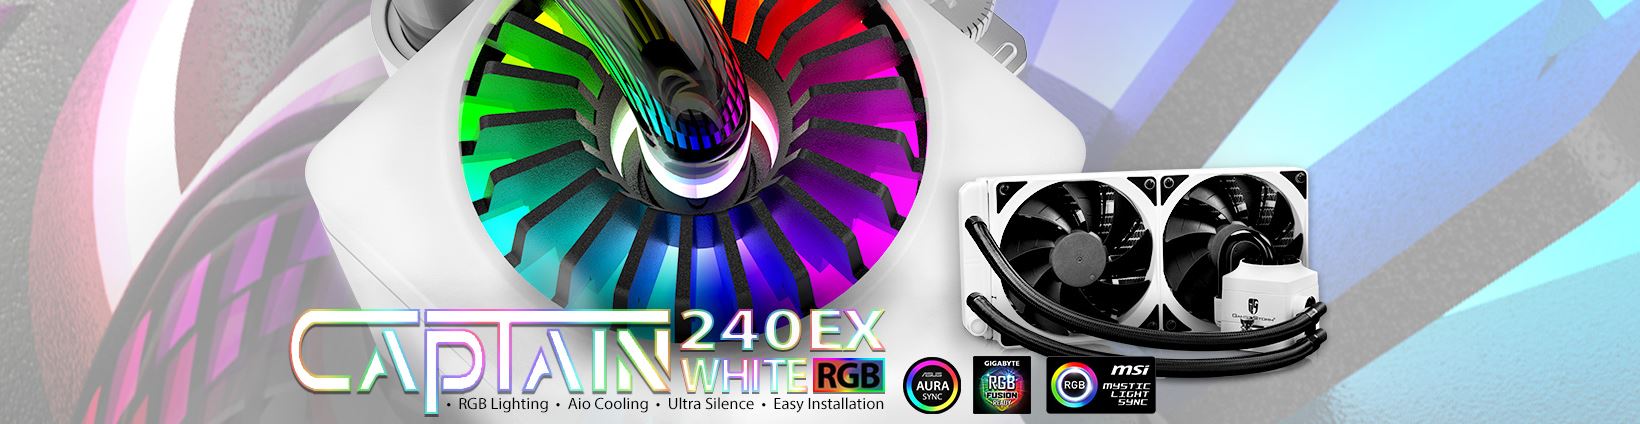 دیپکول از نسخه سفید رنگ خنک کننده مایع Captain 240 EX RGB رونمایی کرد